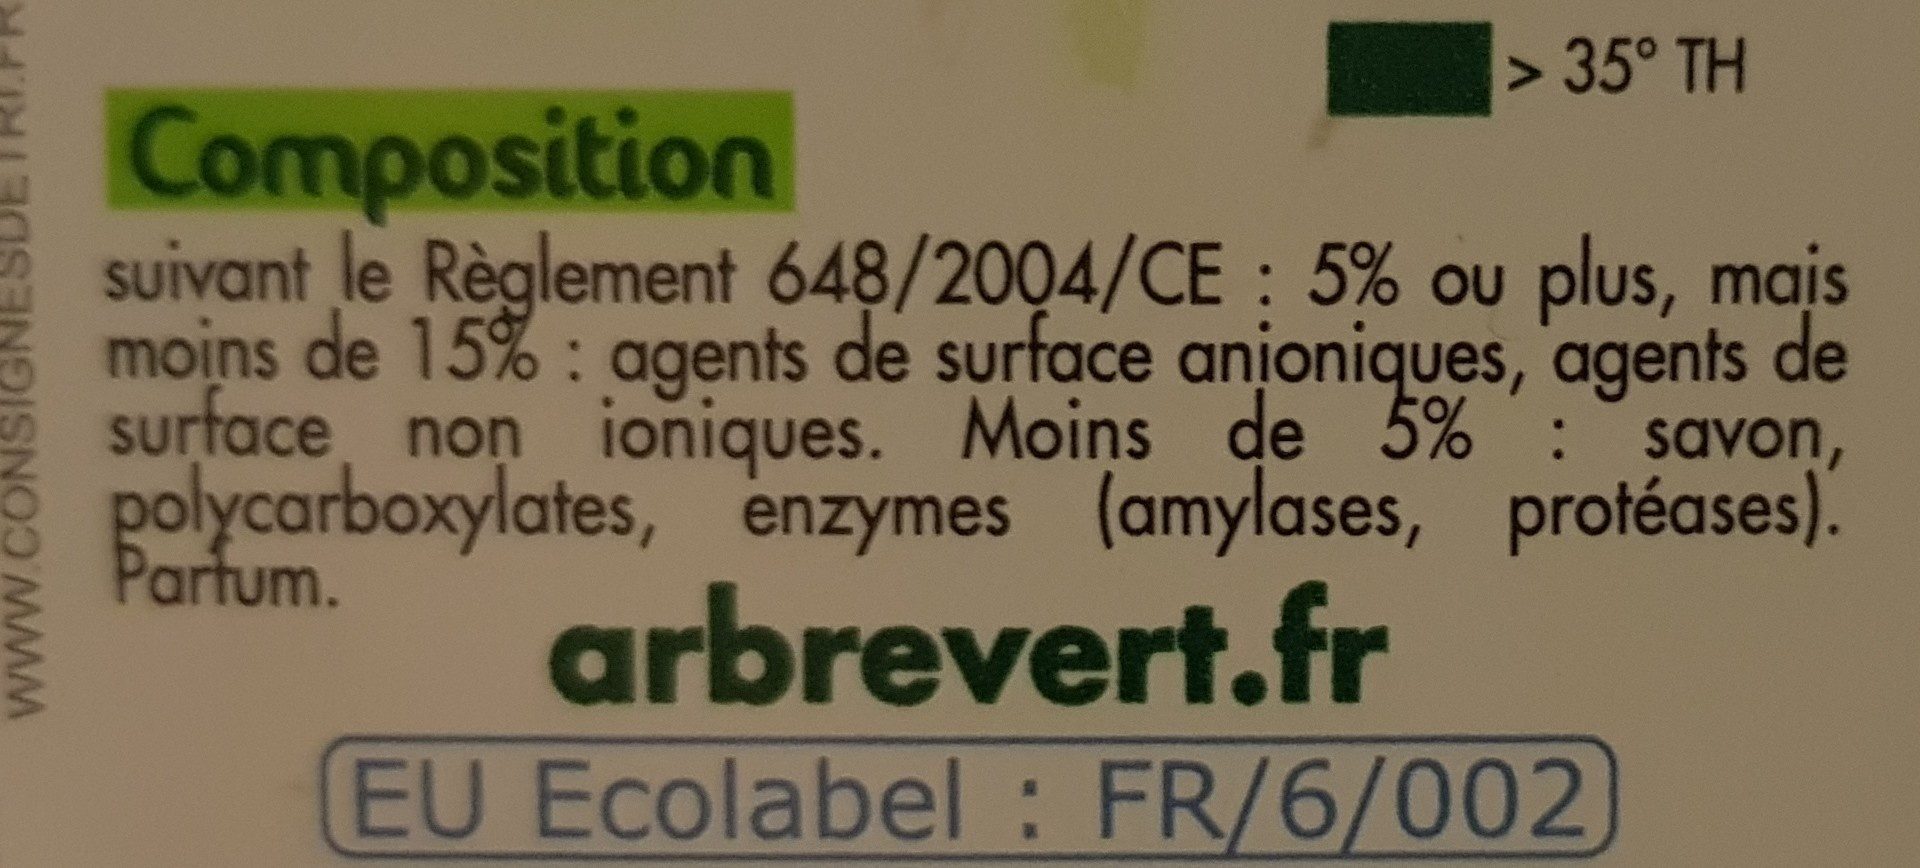 Lessive au savon végétal - Ingredients - fr